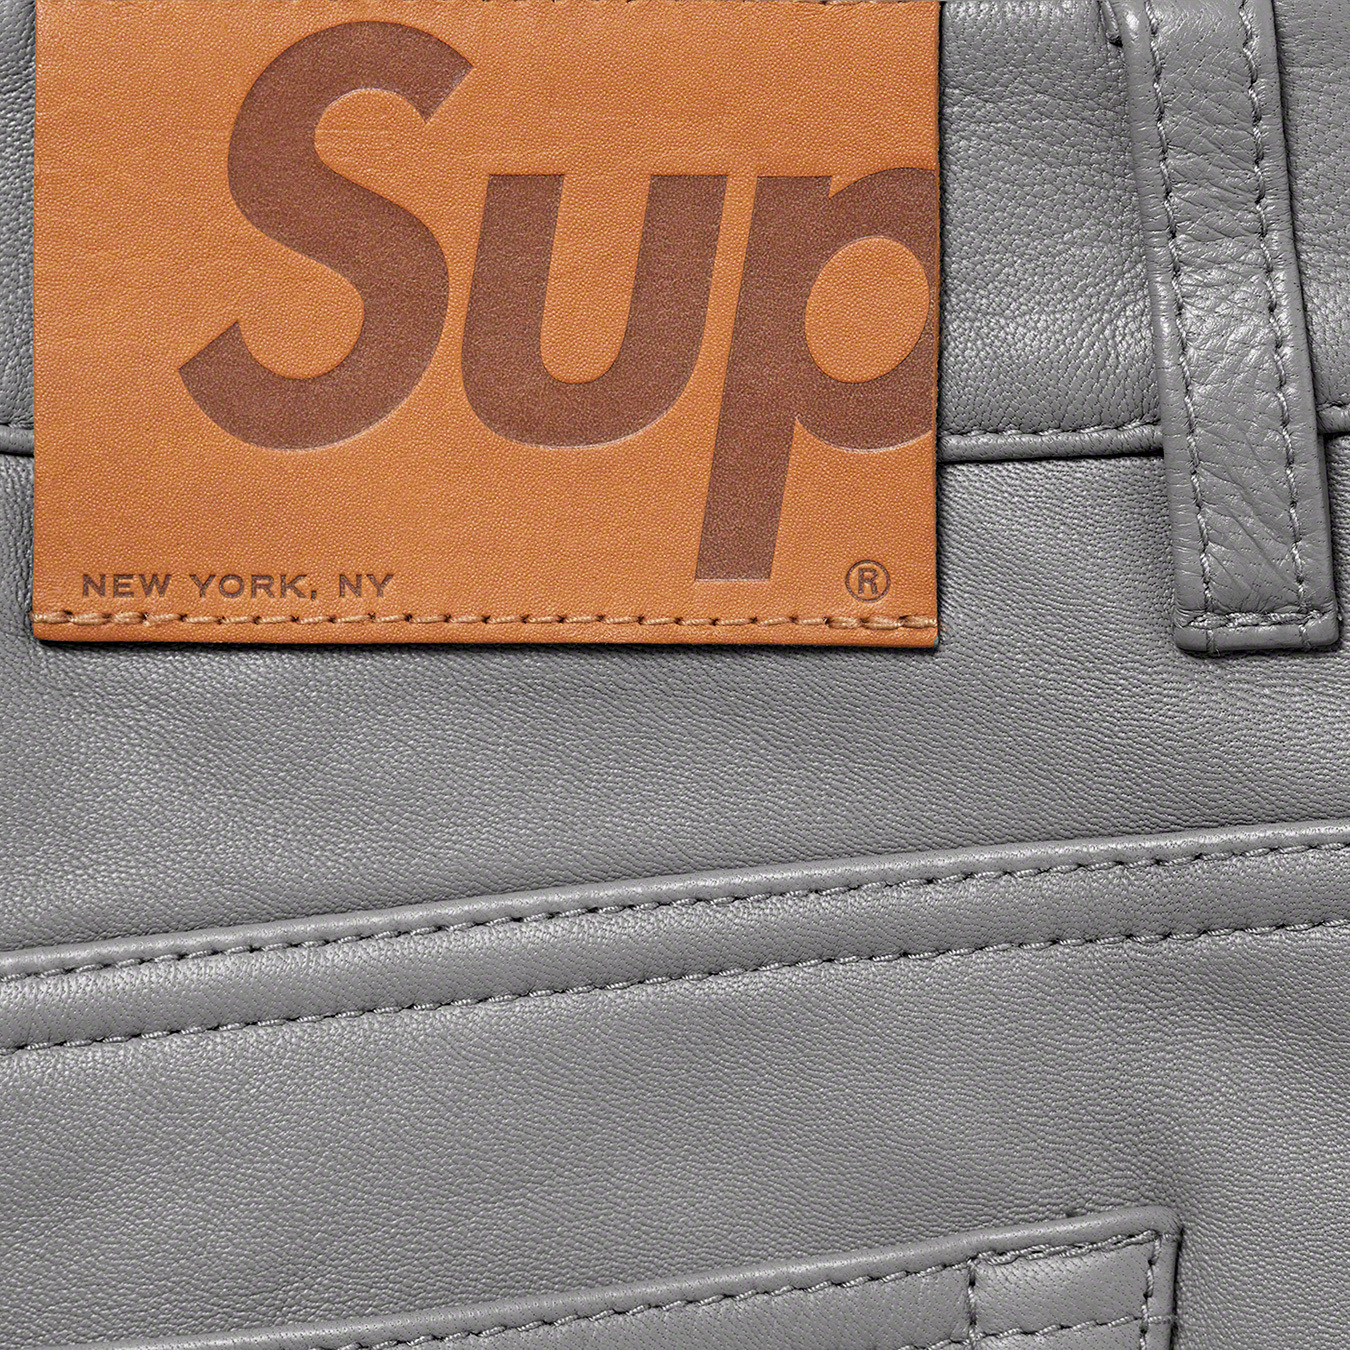 Supreme Leather 5-Pocket Jean